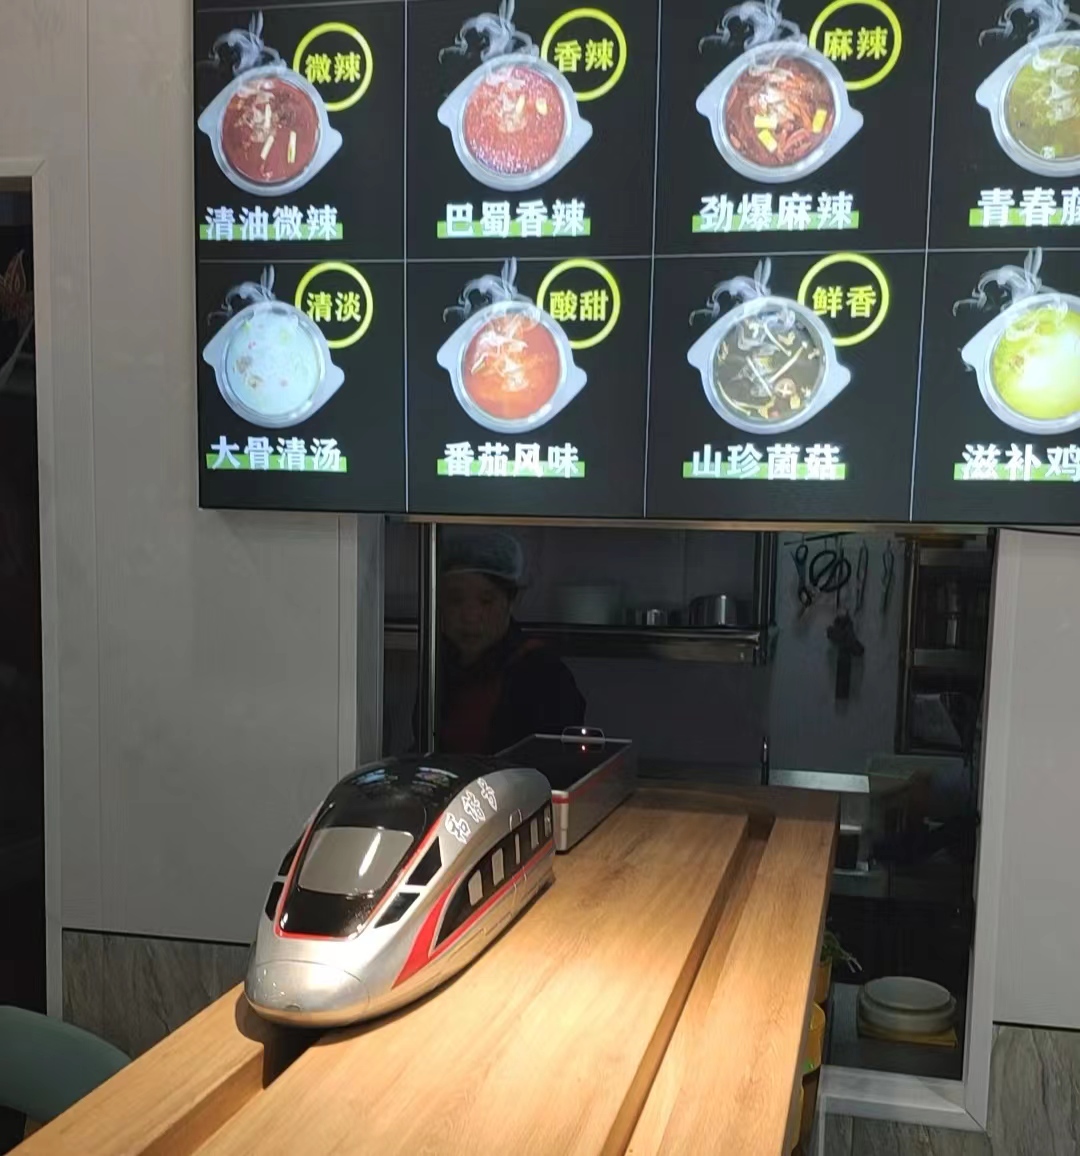 智能送餐小火车：餐饮智能化需求下的借势增长